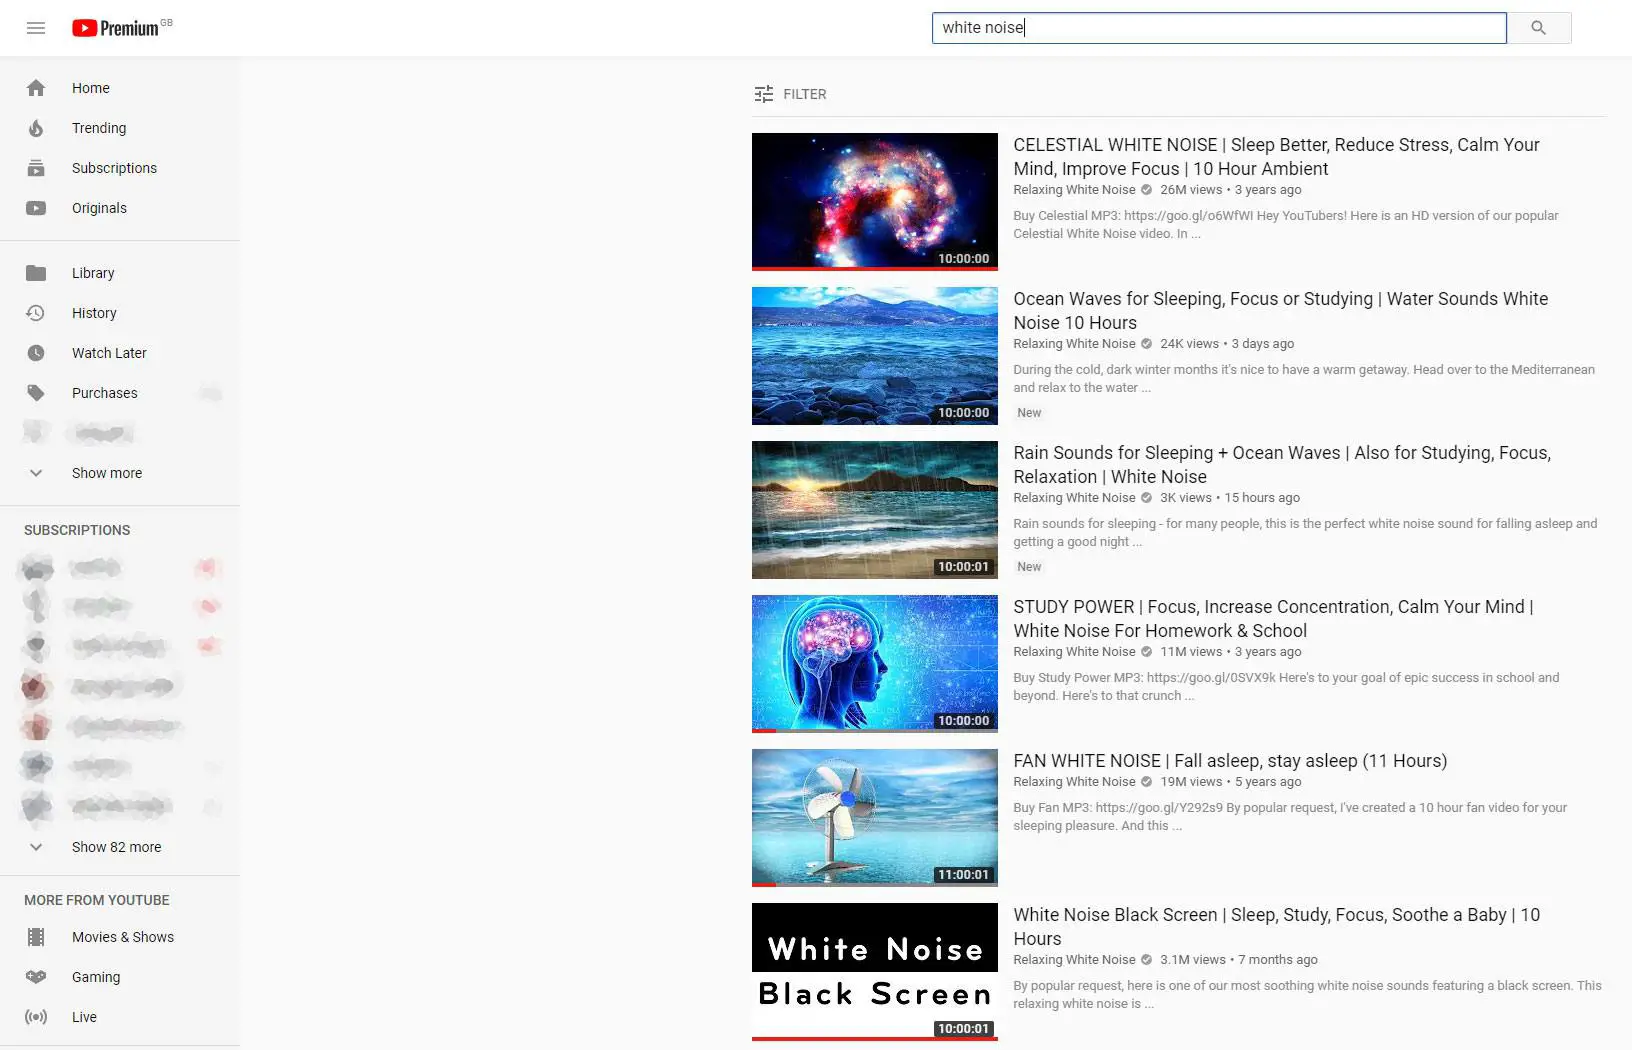 Captura de tela da lista de vídeos do YouTube para vídeos de ruído branco